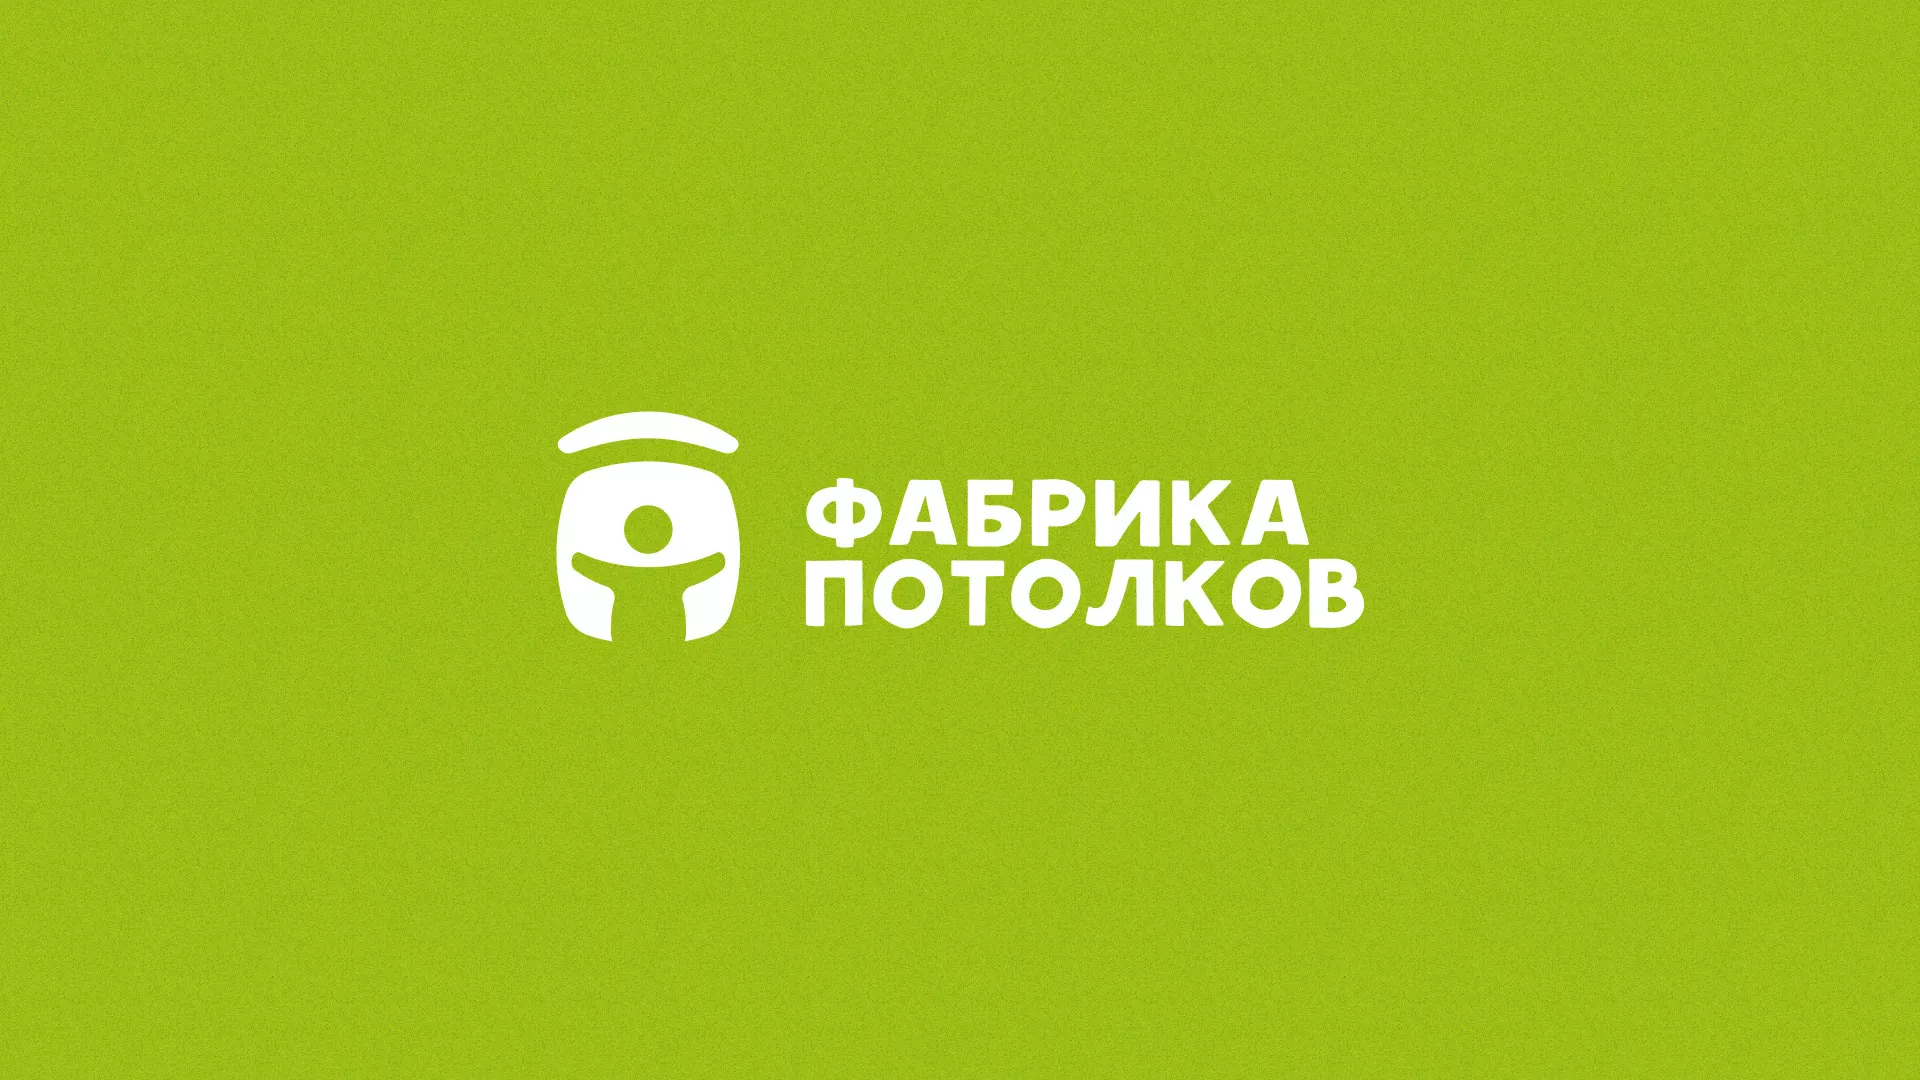 Разработка логотипа для производства натяжных потолков в Жуковке